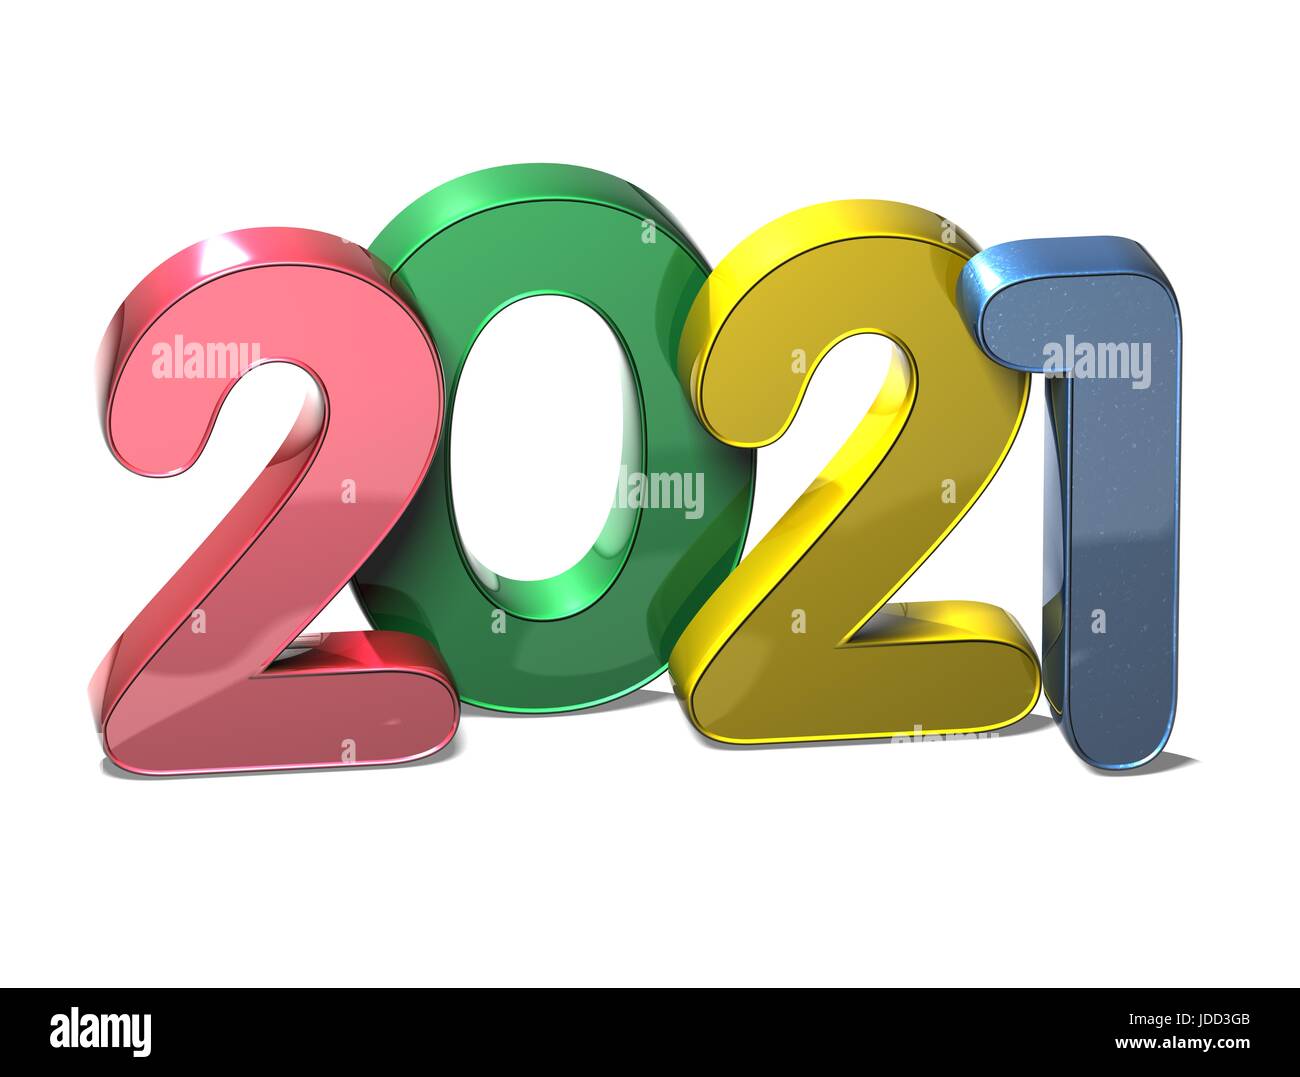 Calendar 2021 Photos & Calendar 2021 Images - Alamy